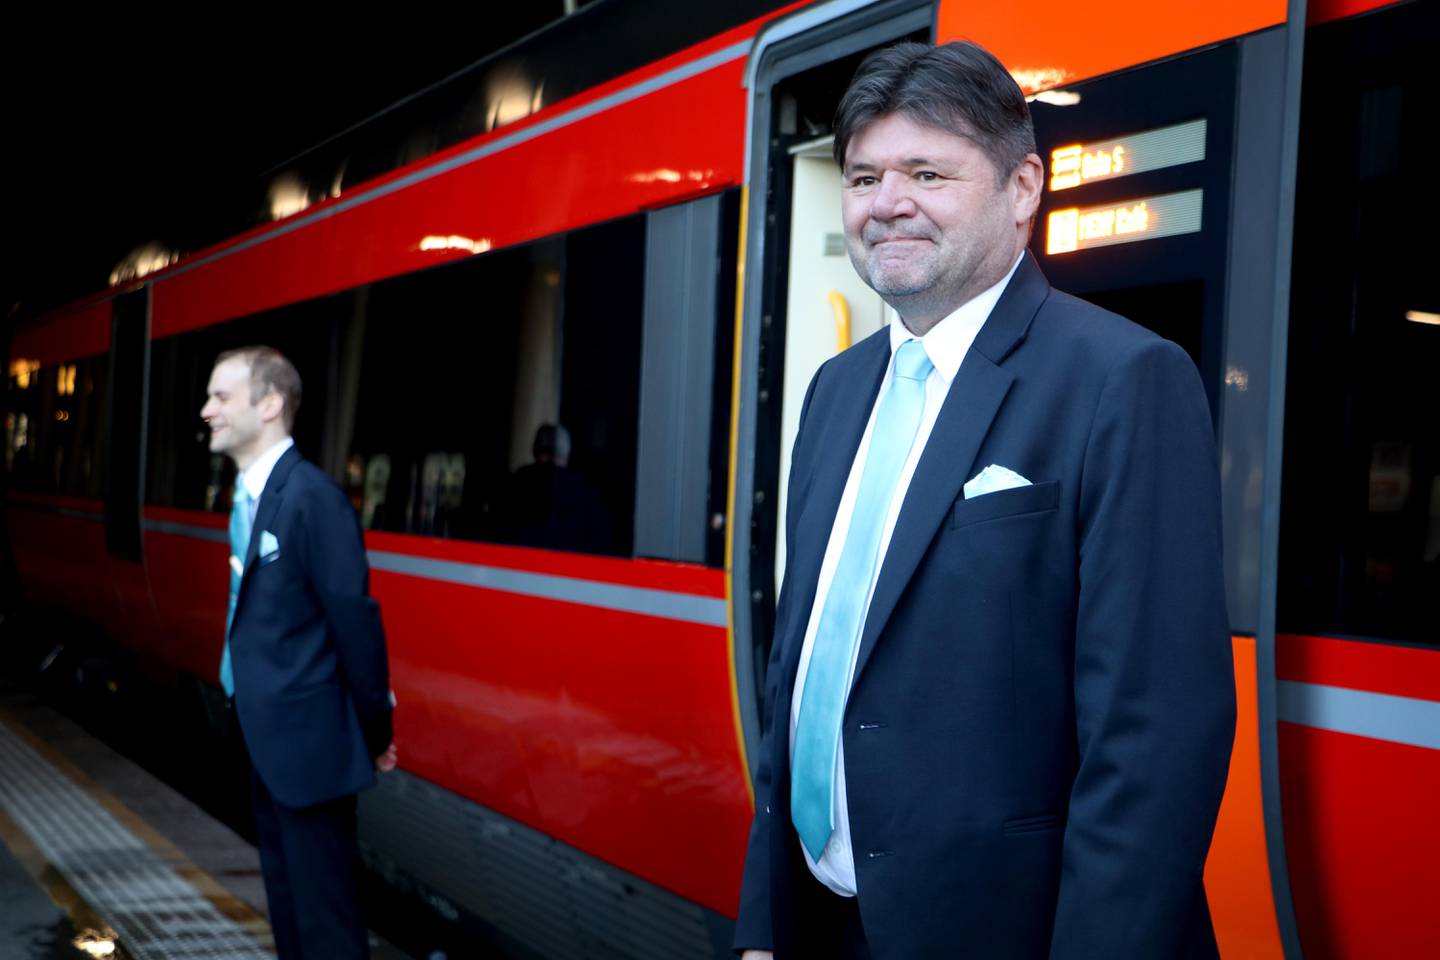 Kundeserviceansvarlig i Go-Ahead, Ole Andreas Skårland ønsket passasjerene velkomne på toget.